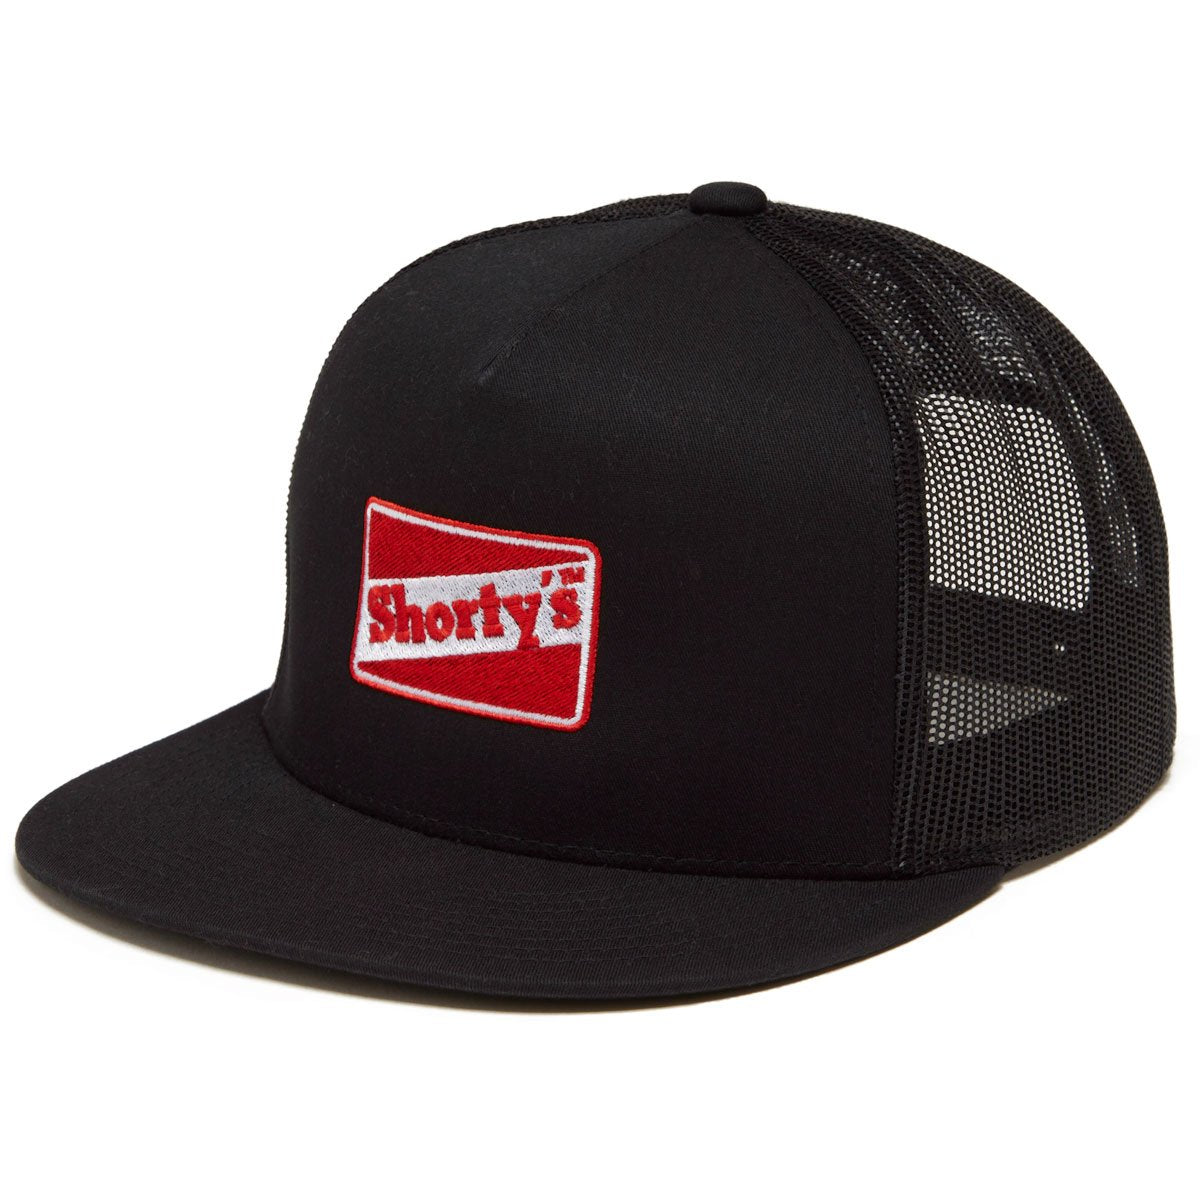 Shorty's OG Logo Snapback Hat - Black image 1